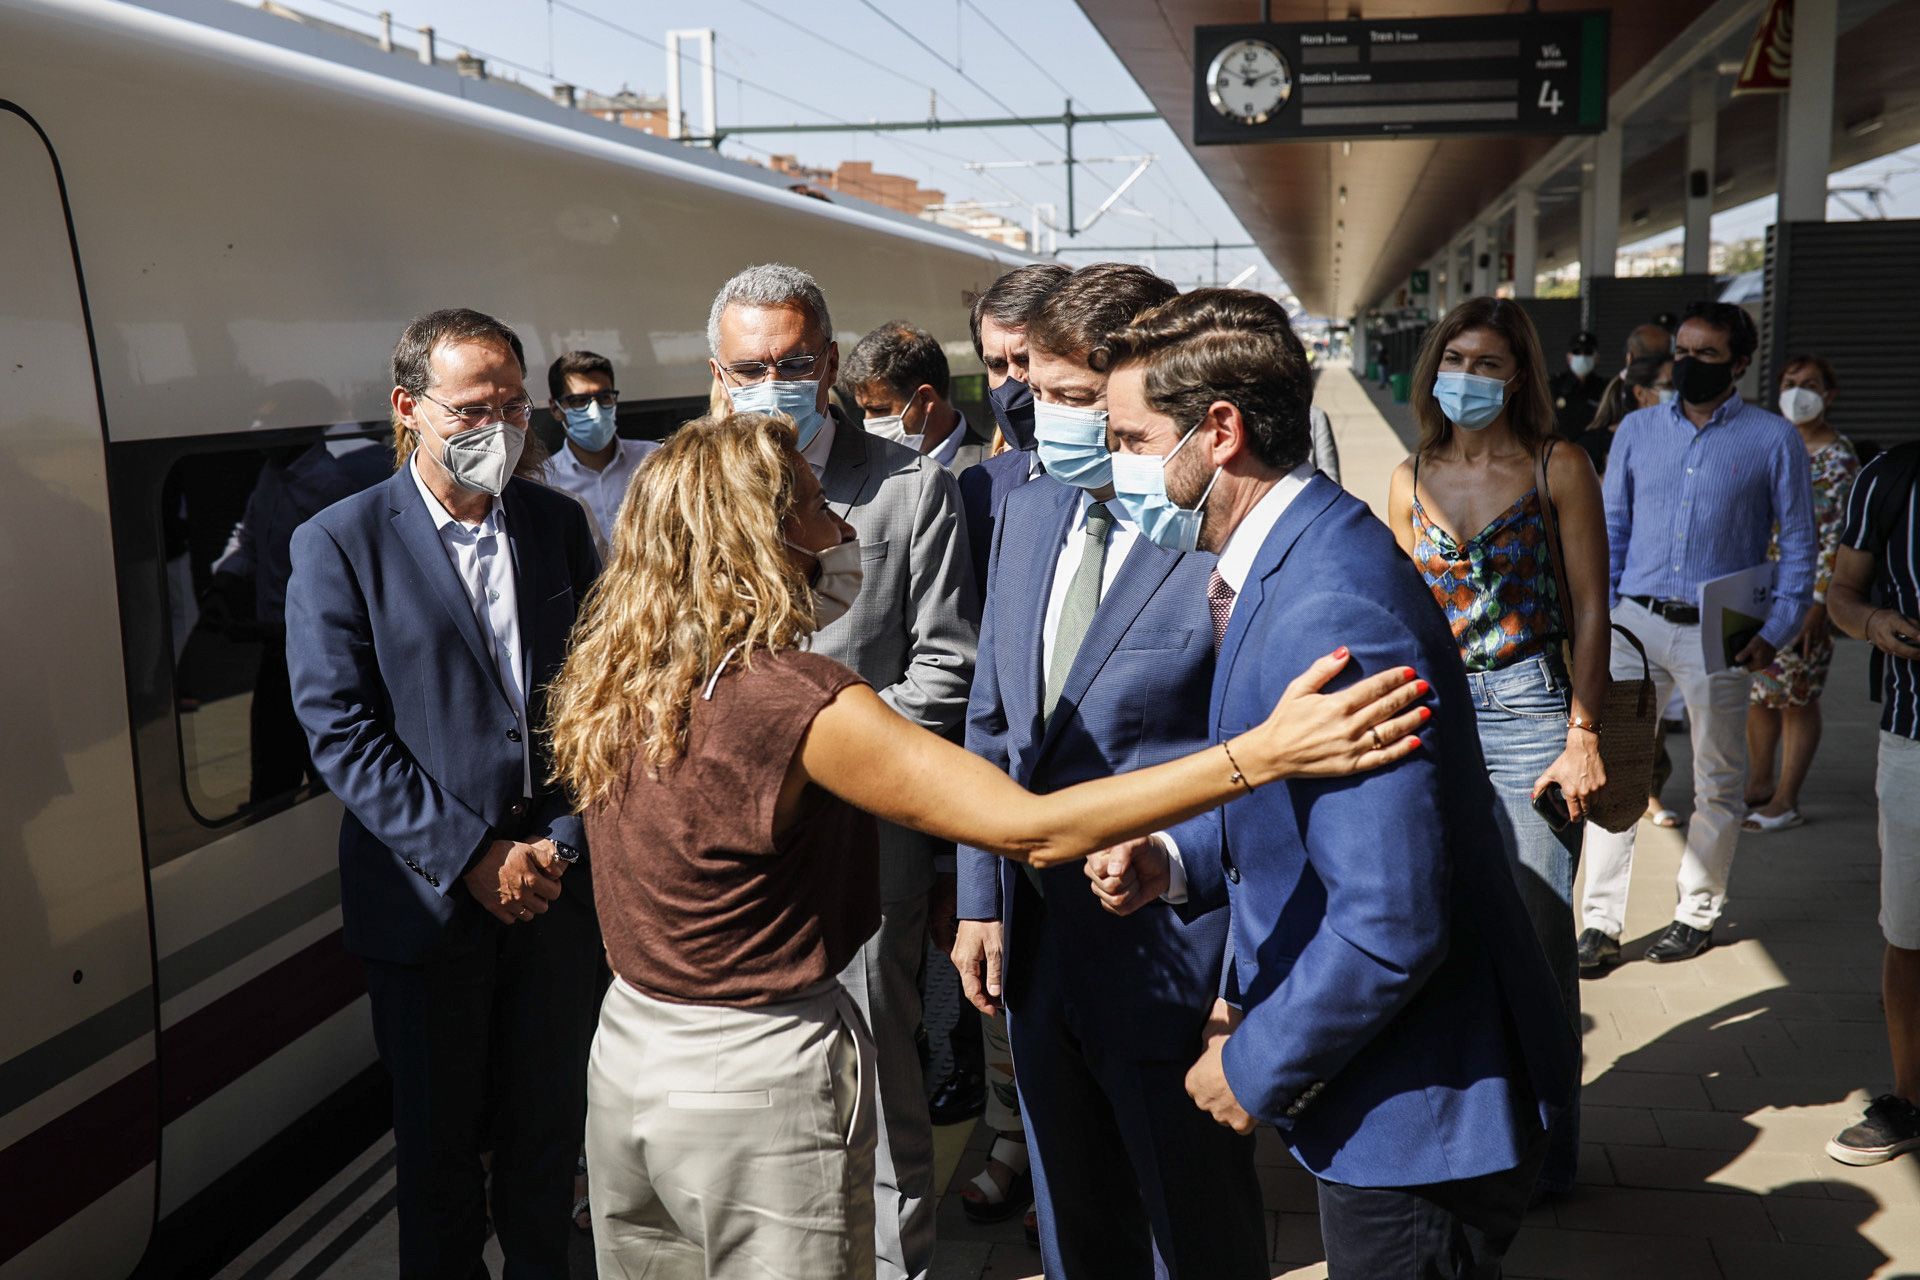 GALERÍA | Así ha sido en imágenes la inauguración de la estación del AVE en Otero de Sanabria